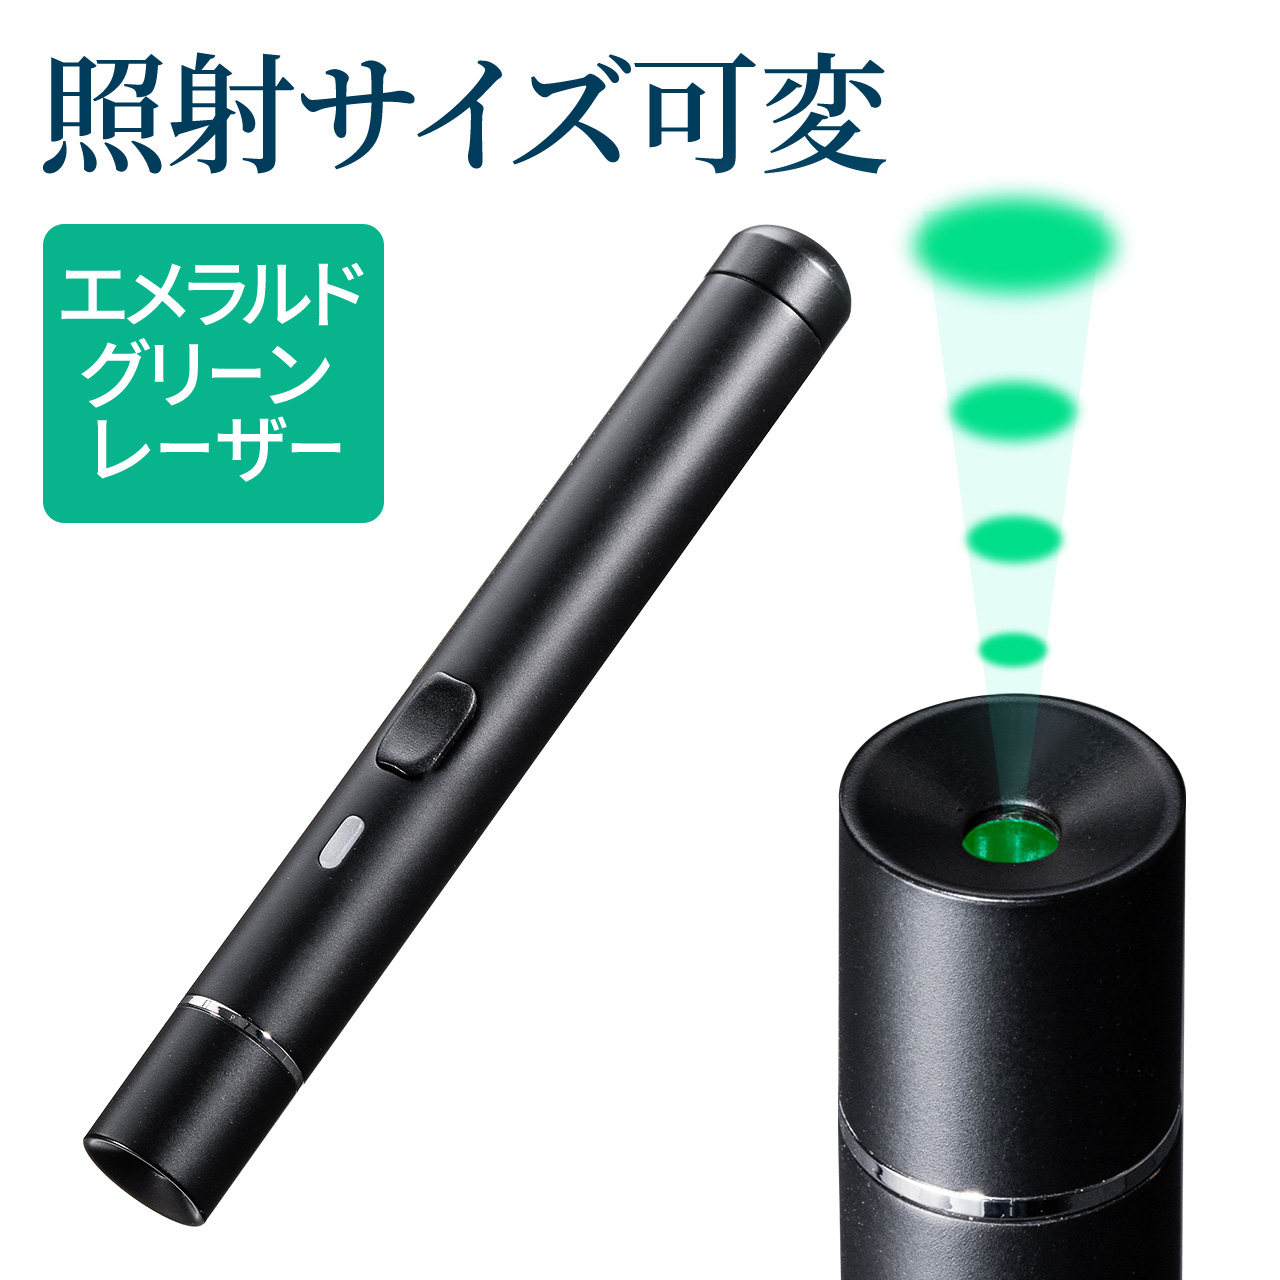 レーザーポインター グリーン 緑 エメラルドグリーン 強力 明るい おしゃれ 長寿命 15時間 連続照射 サイズ可変  小型 コンパクト スリム 軽量 ペン型 PSC認証